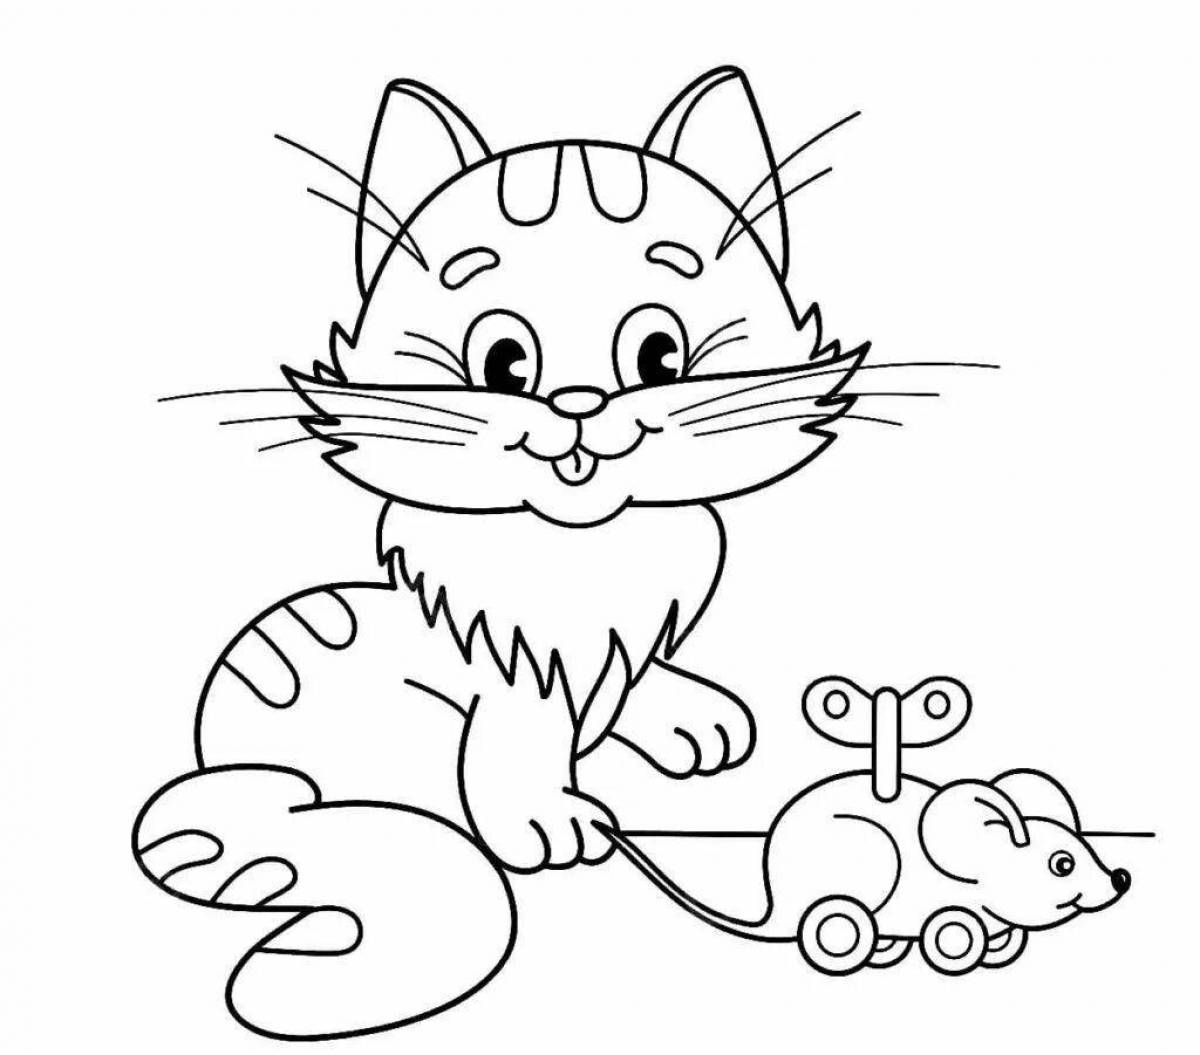 Пузырьковая раскраска кошка для детей 2-3 лет